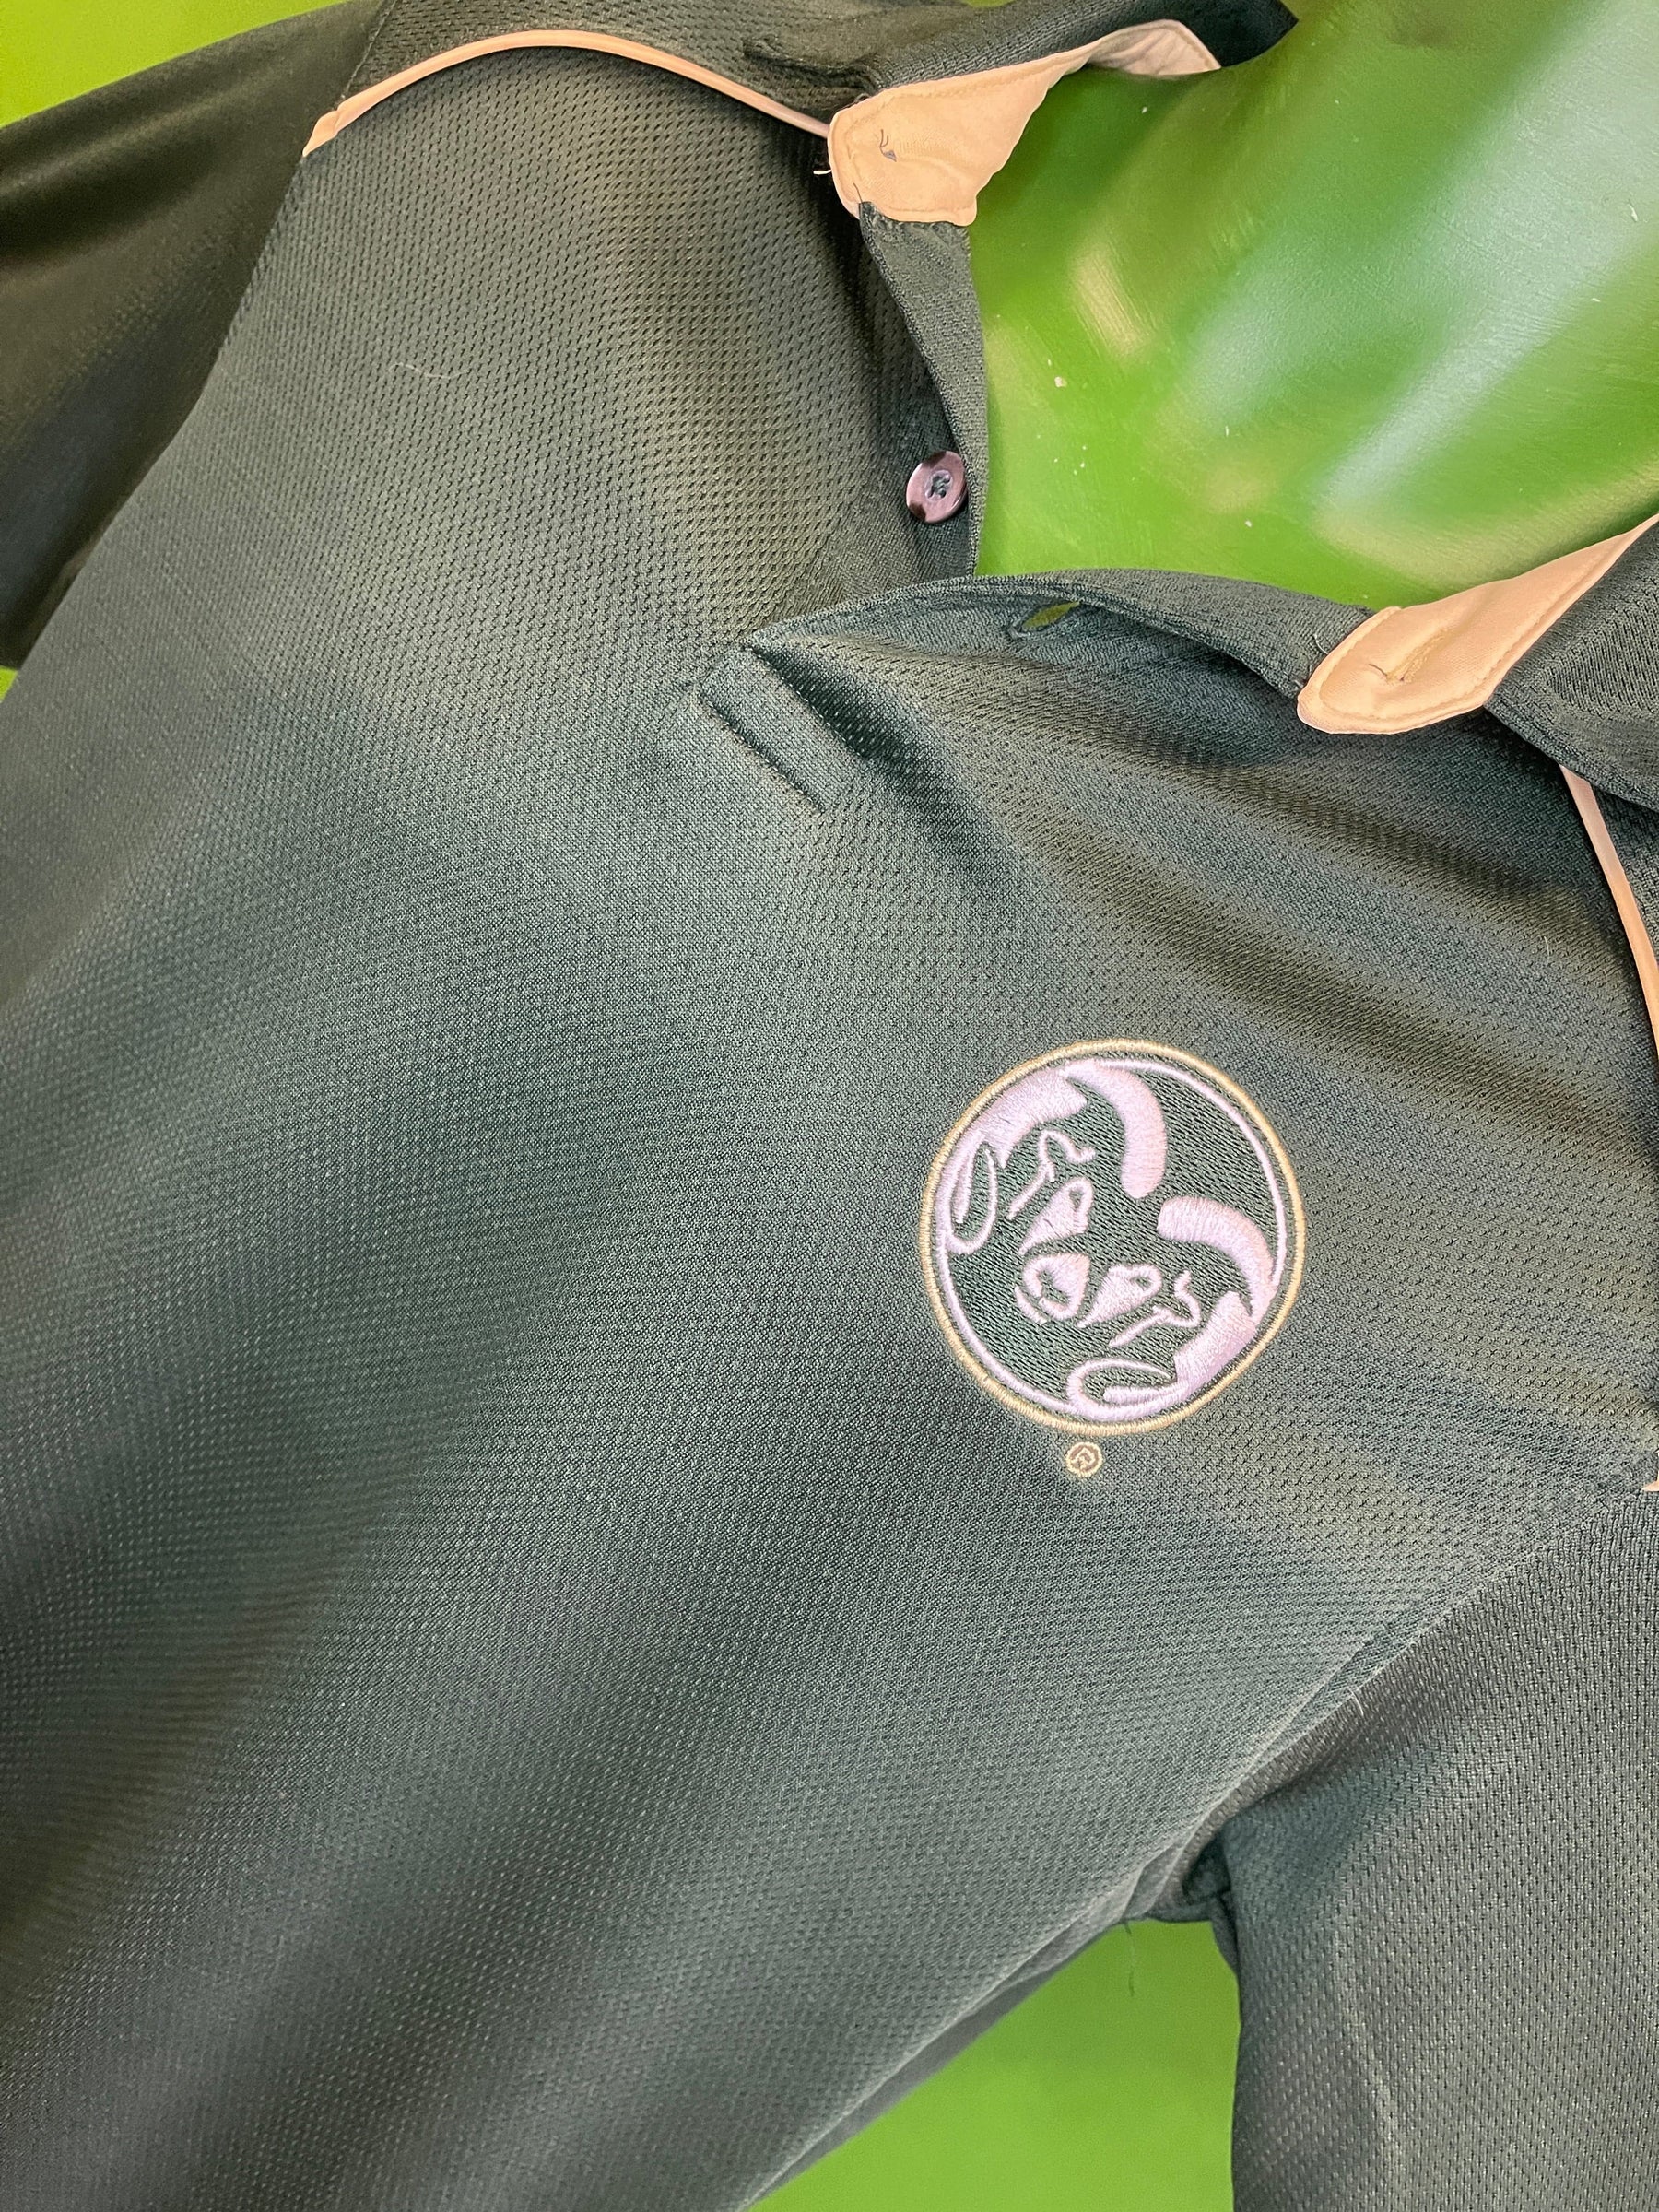 NCAA Colorado State Rams Green Golf Polo Shirt Men's Medium